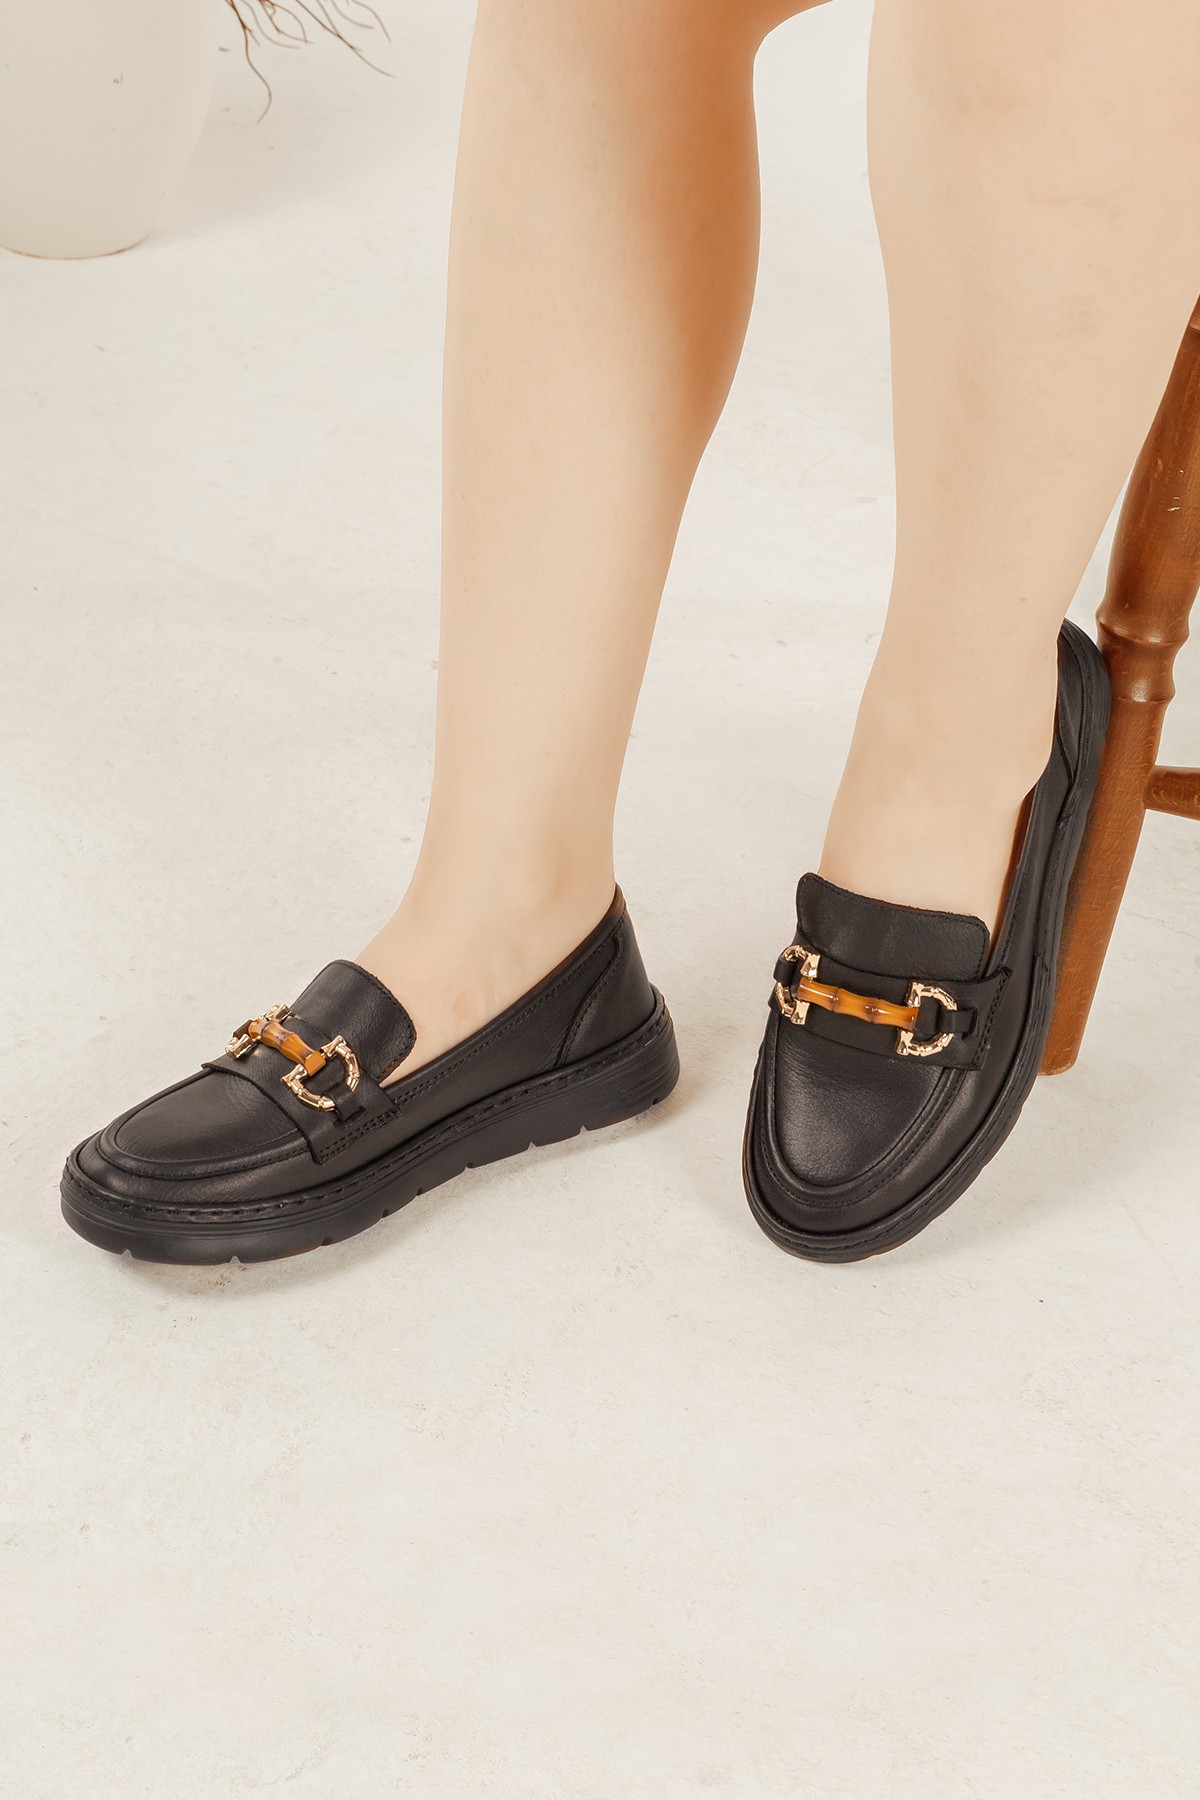 Cooliza Hakiki Deri Toka Detaylı Günlük Rahat Kadın Babet Casual Ayakkabı - Siyah